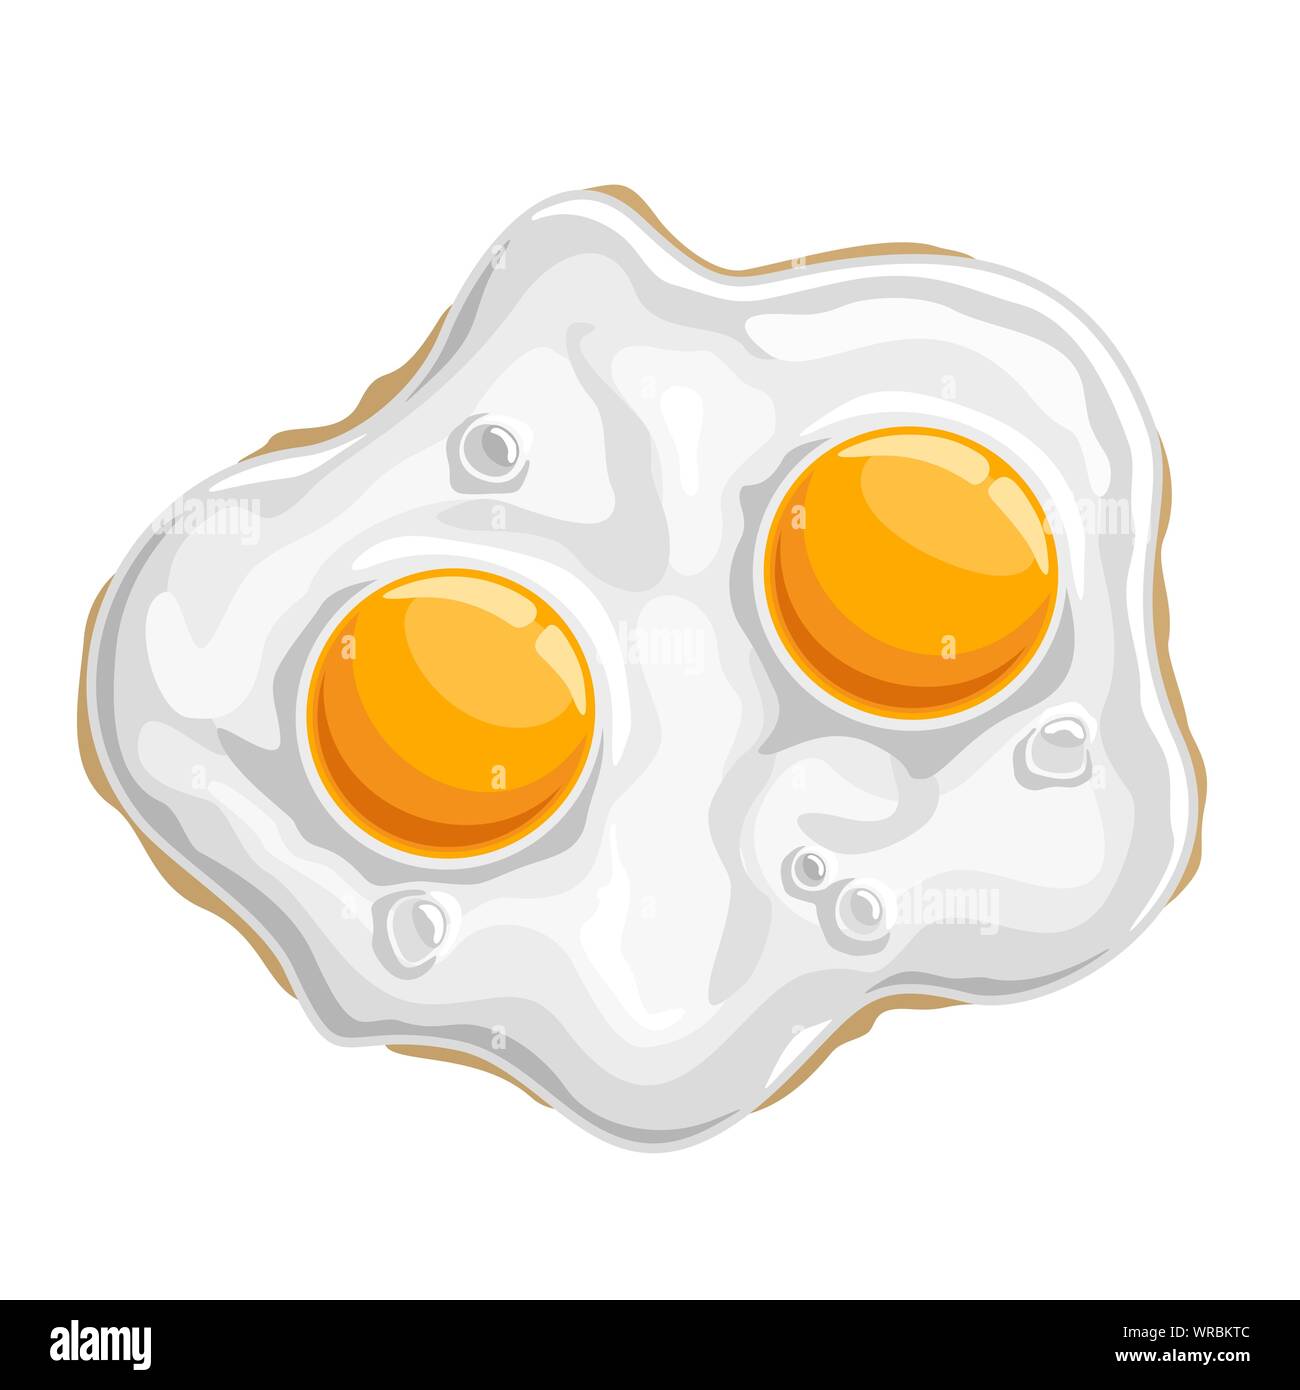 Illustrazione Vettoriale di fritto di pollo lucido uova cotte isolato di proteina di colore bianco con 2 giallo tuorlo, tradizionale fritto croccante prima colazione. Illustrazione Vettoriale